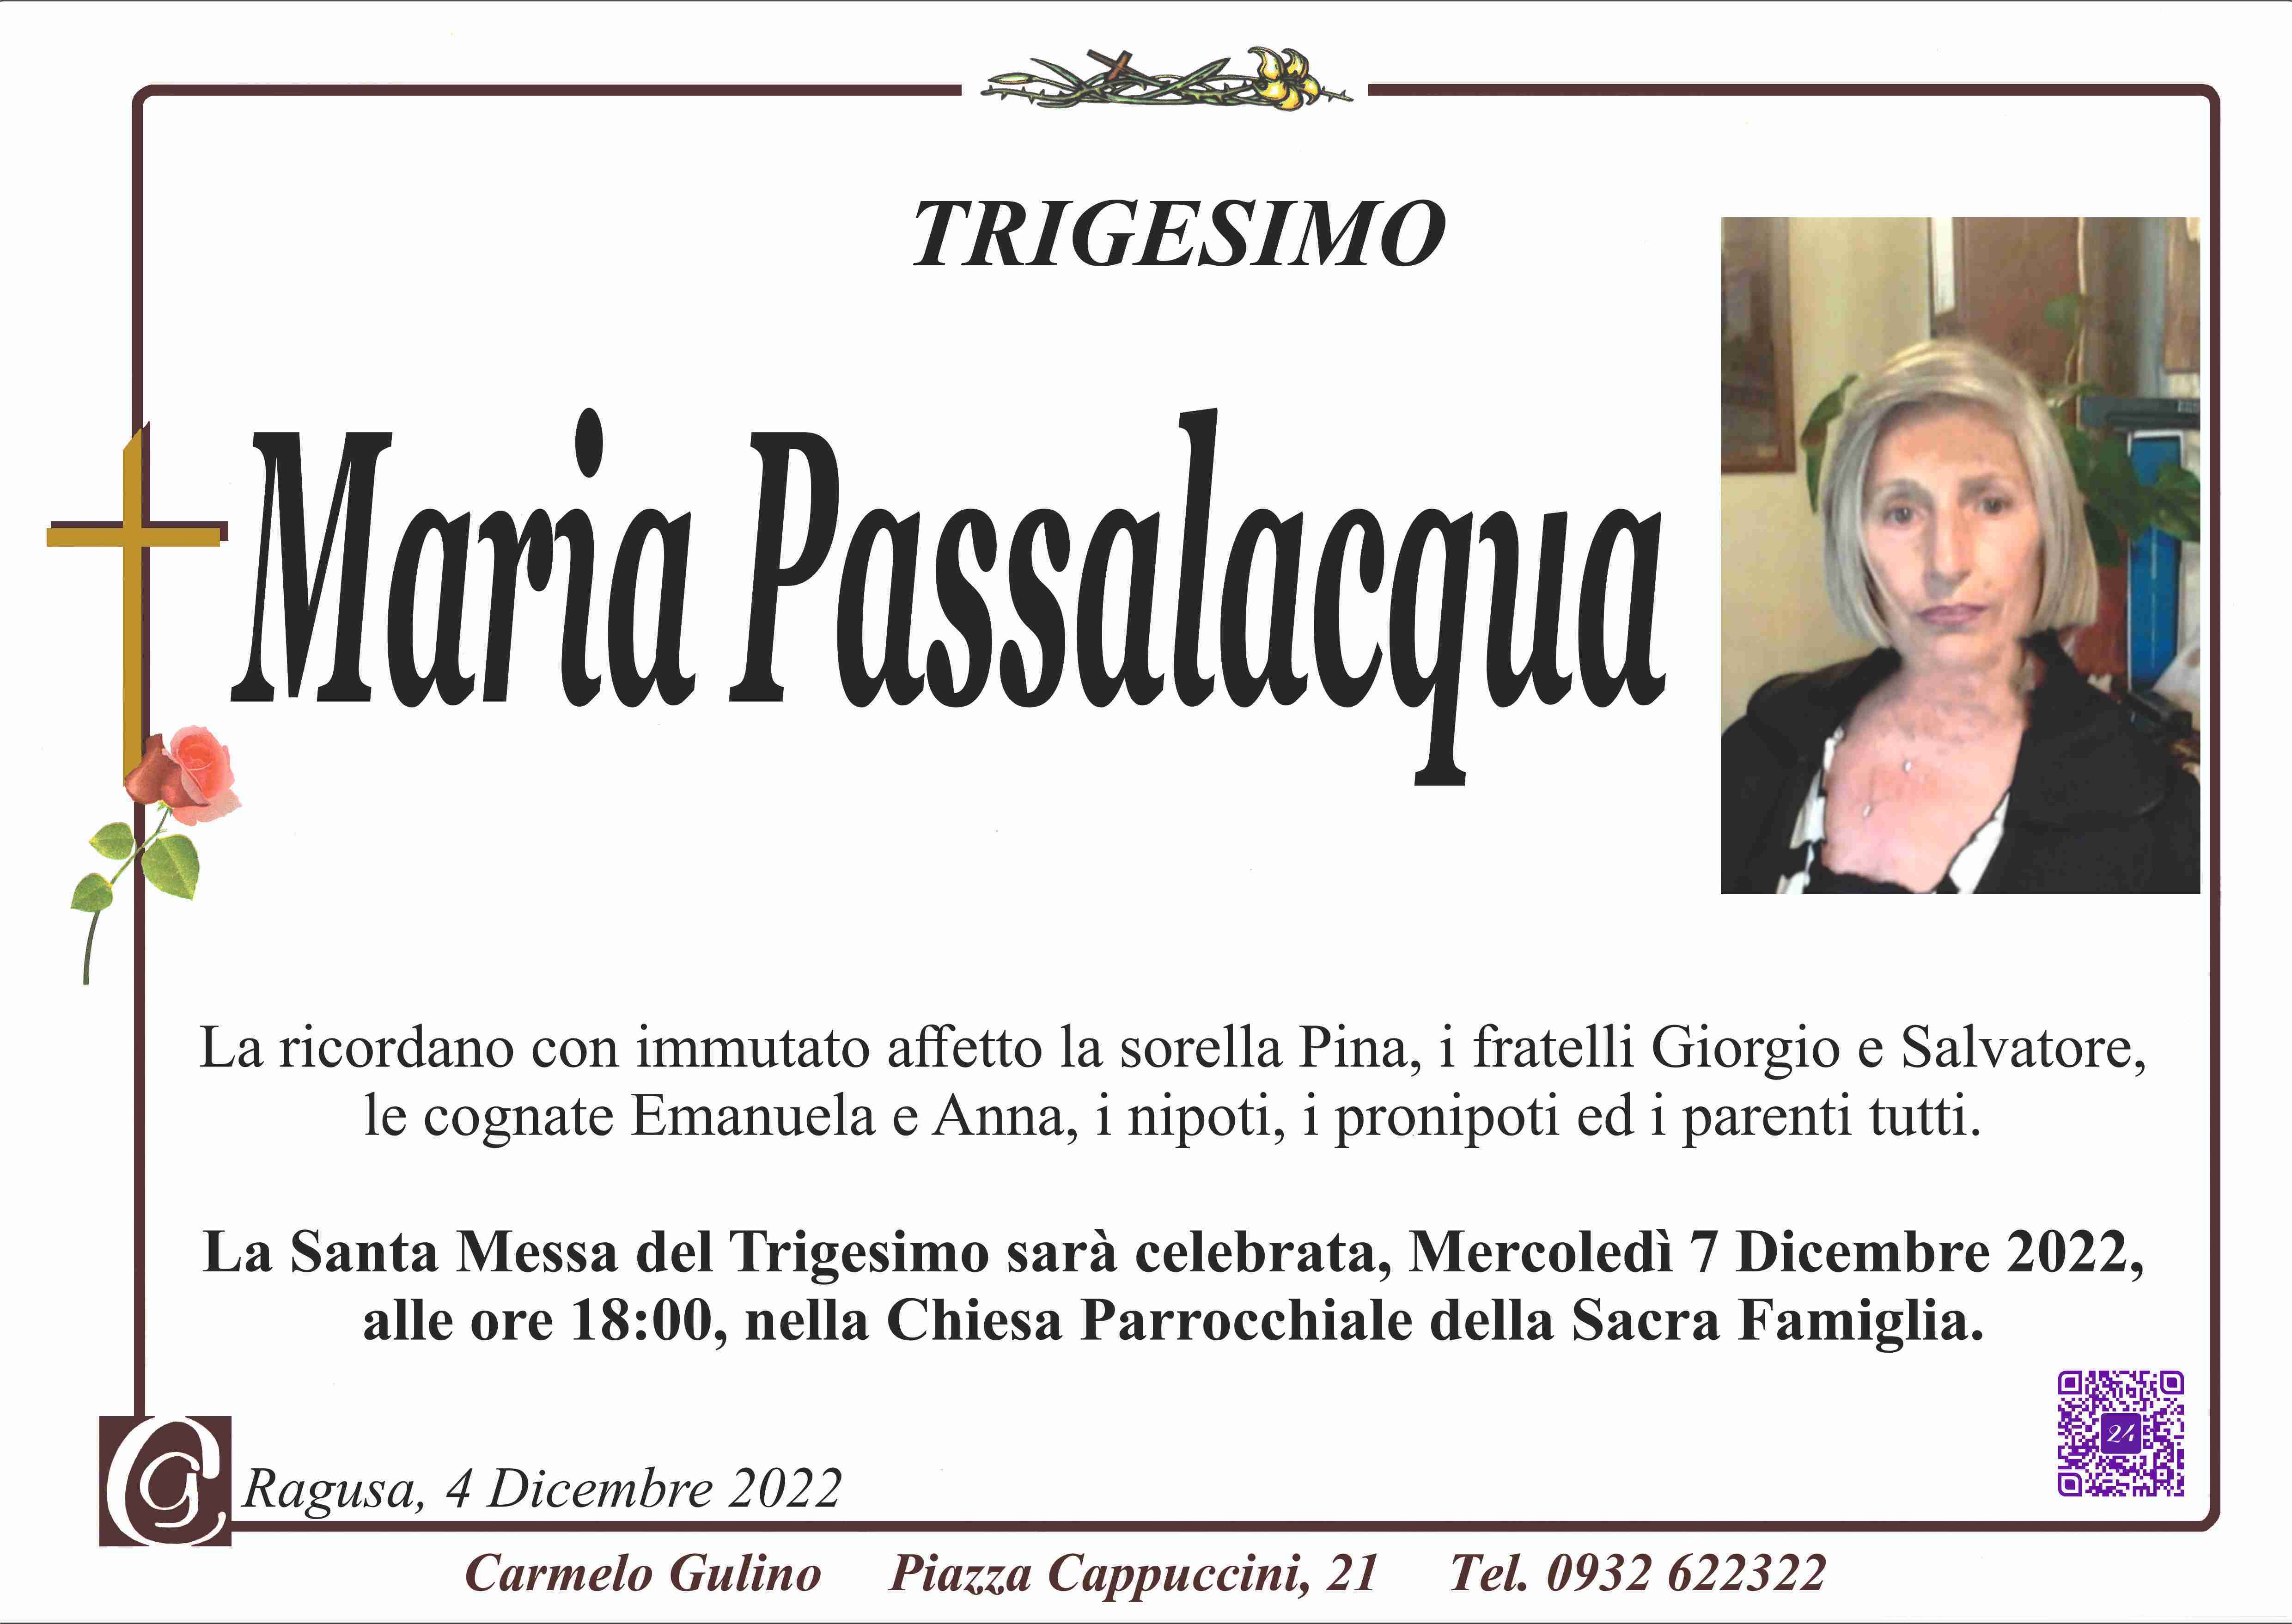 Maria Passalacqua